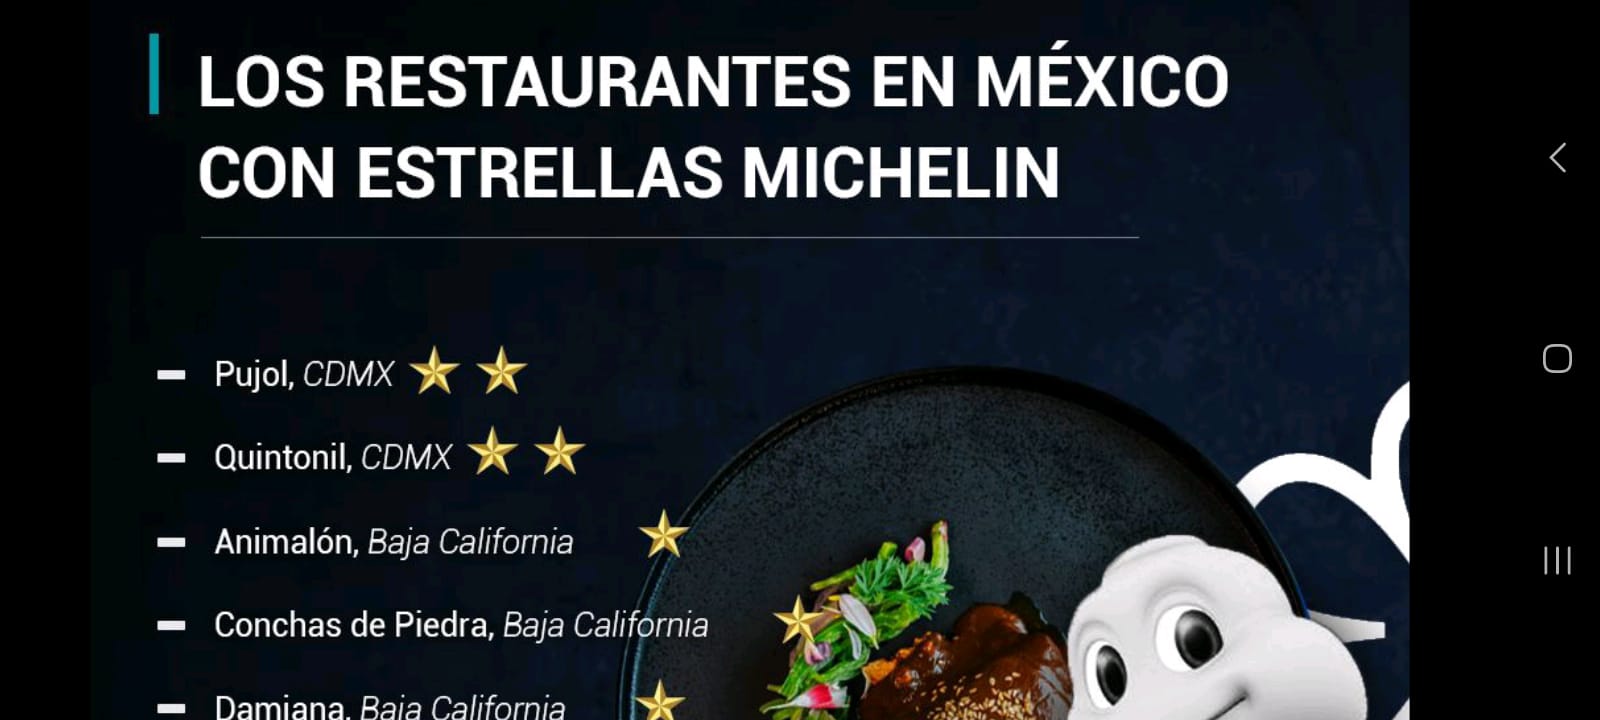 Los restaurantes en México con Estrella Michelin, un reconocimiento a la excelencia culinaria